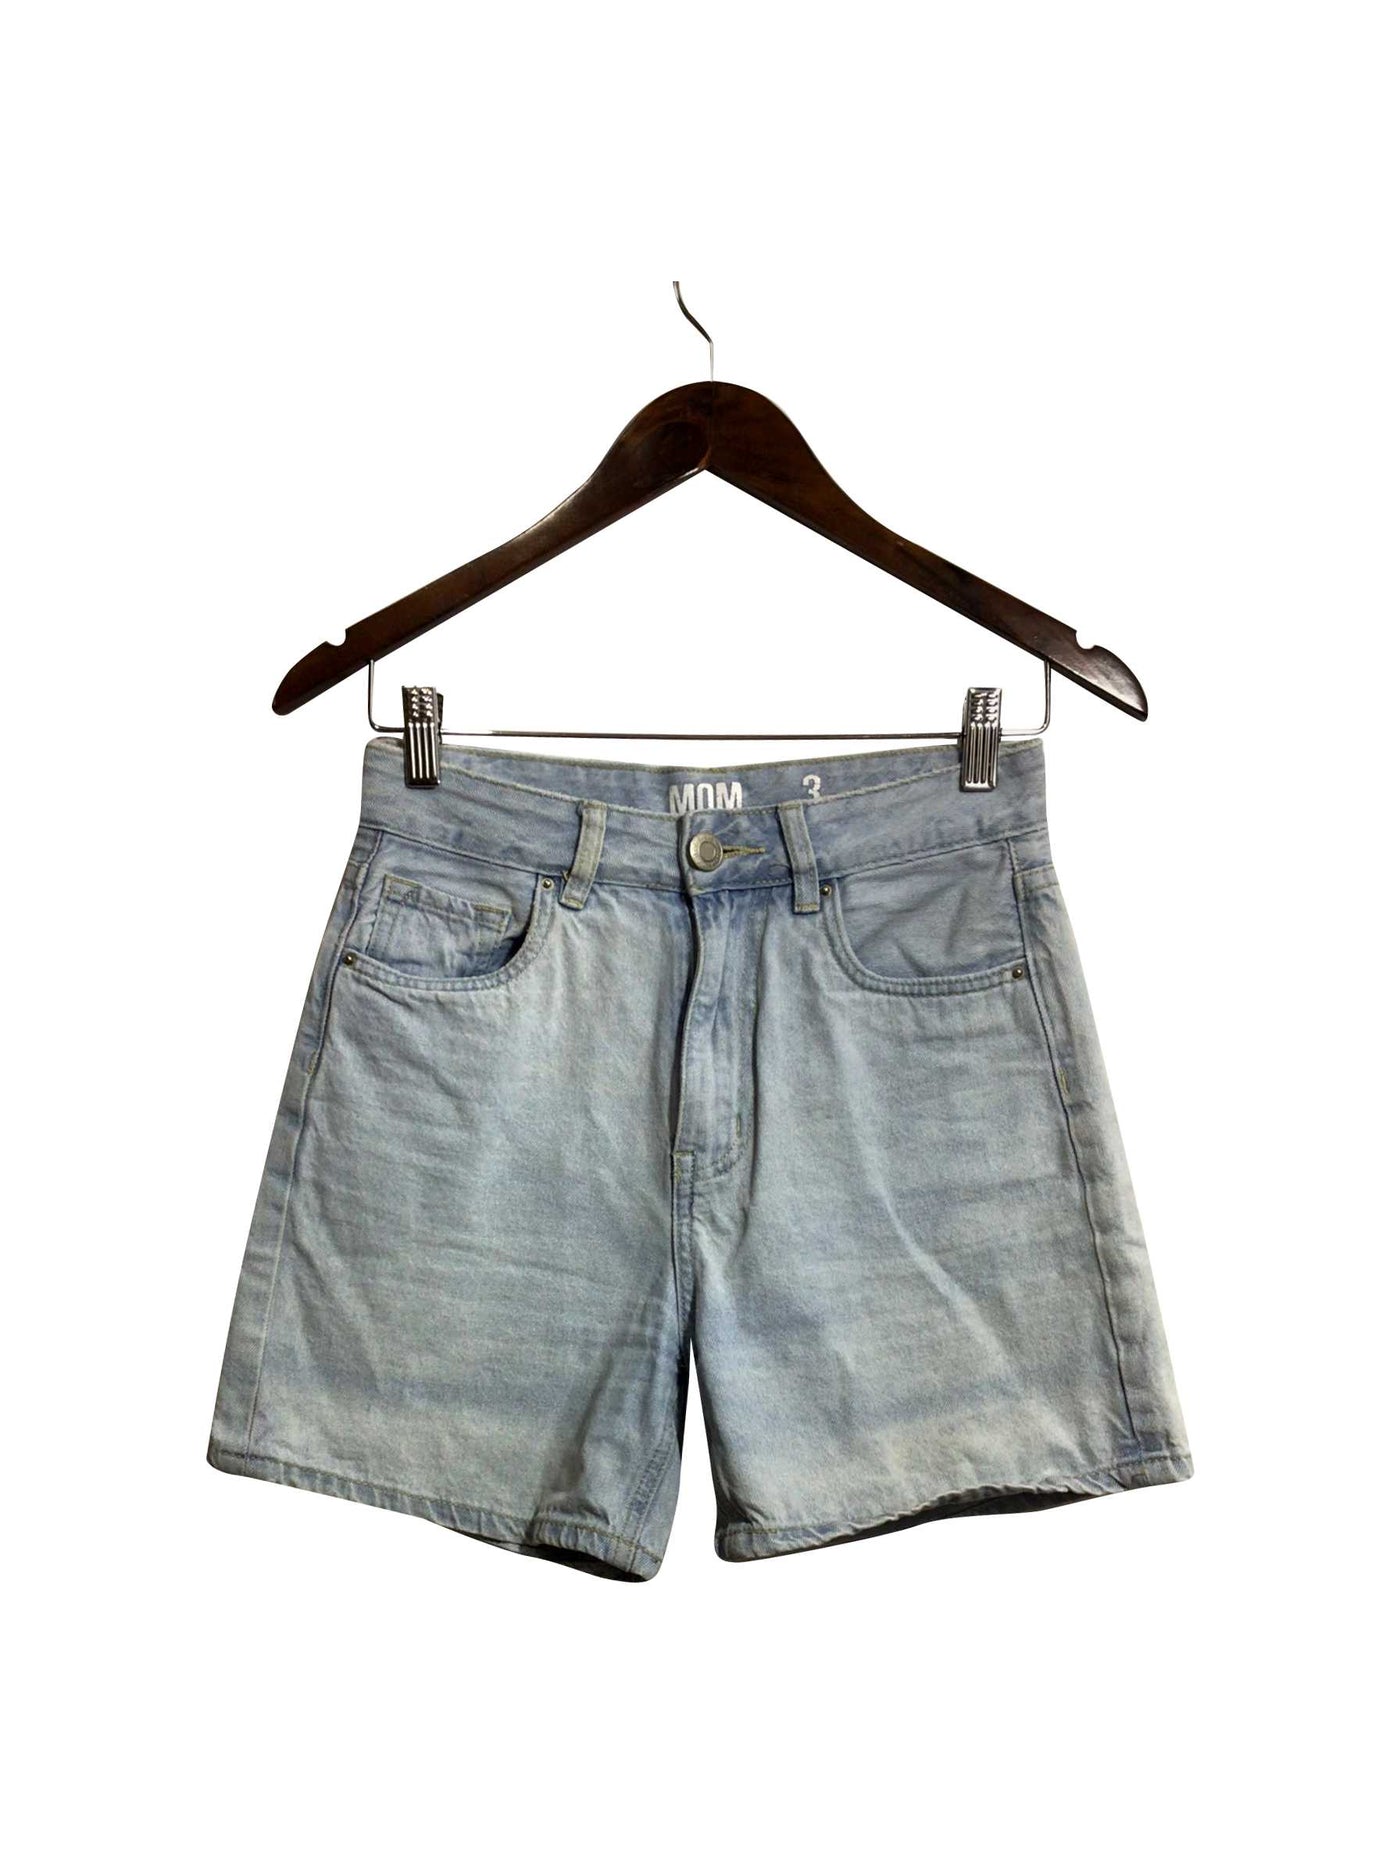 UNBRANDED Regular fit Jeans Shorts in Blue - Size 3 | 13.25 $ KOOP